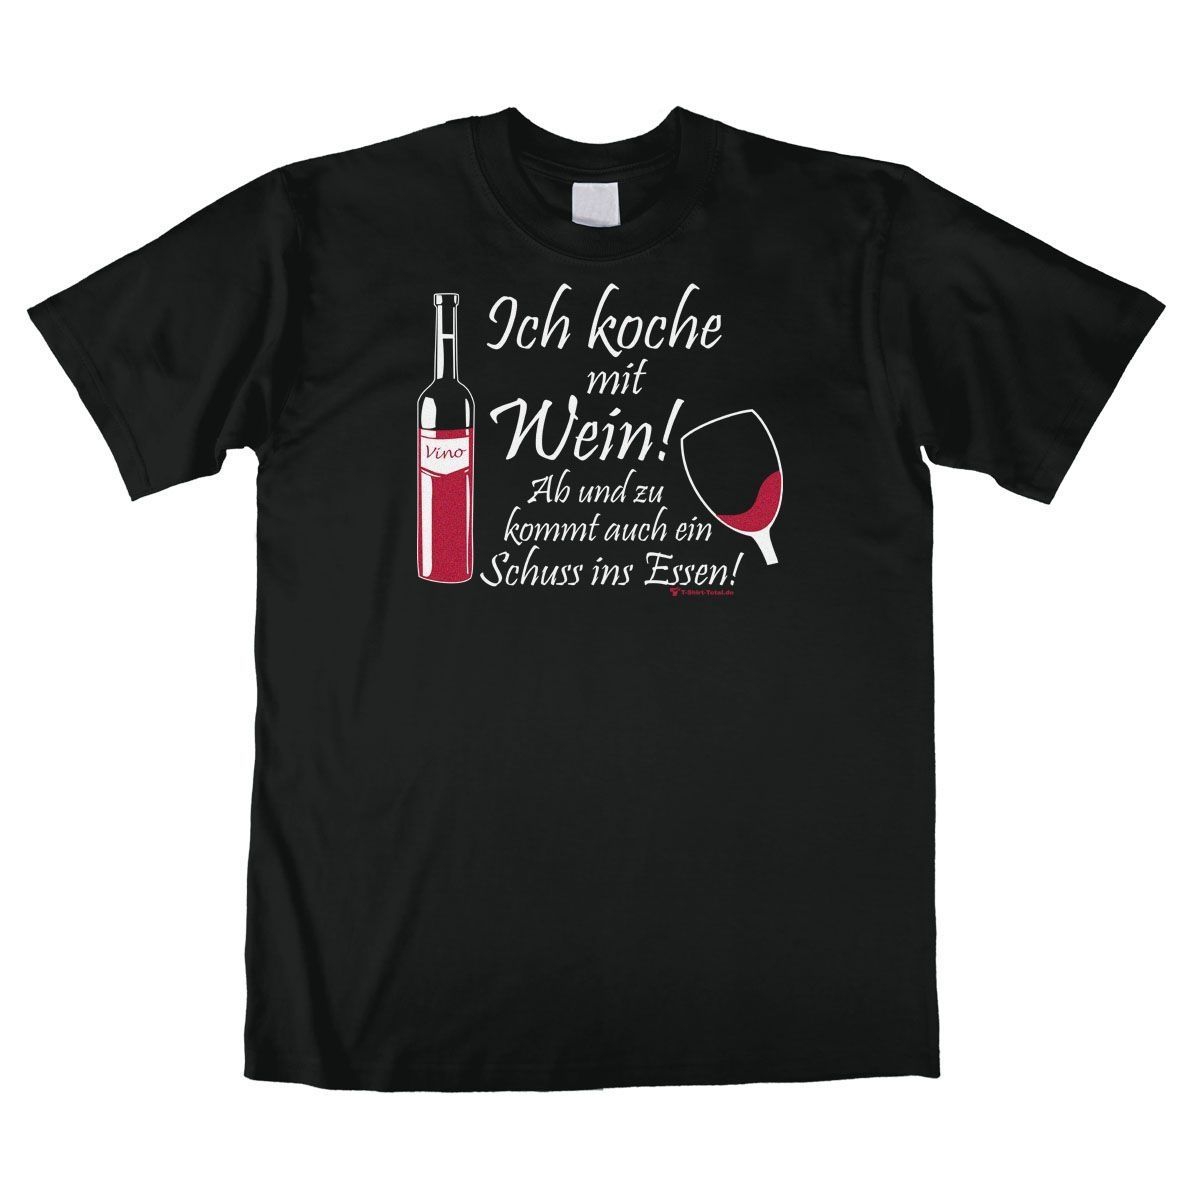 Koche mit Wein Unisex T-Shirt schwarz Medium